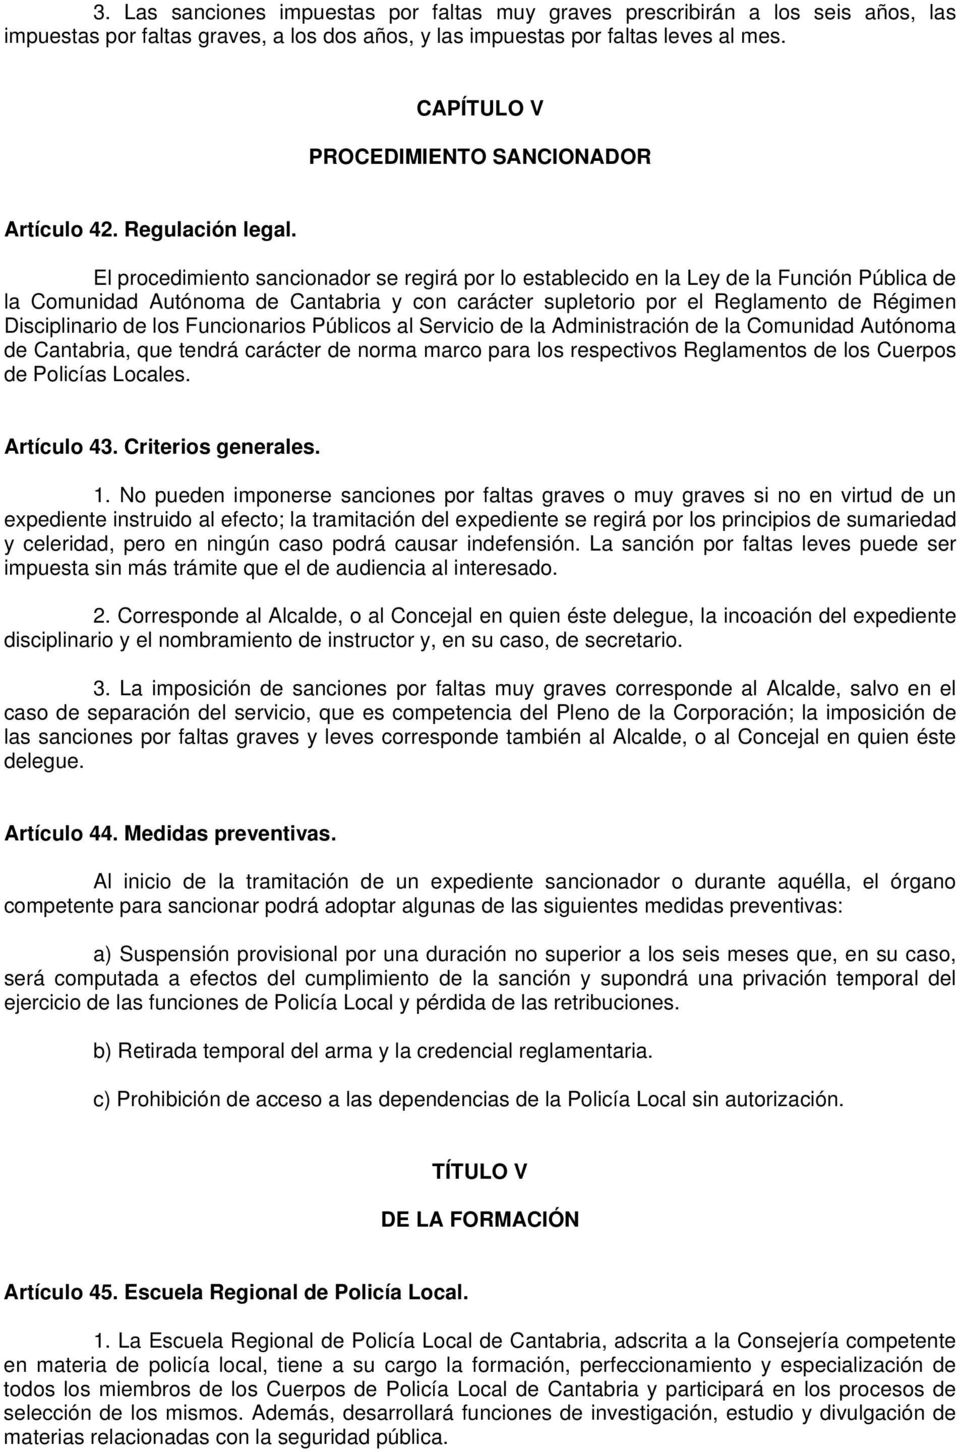 El procedimiento sancionador se regirá por lo establecido en la Ley de la Función Pública de la Comunidad Autónoma de Cantabria y con carácter supletorio por el Reglamento de Régimen Disciplinario de